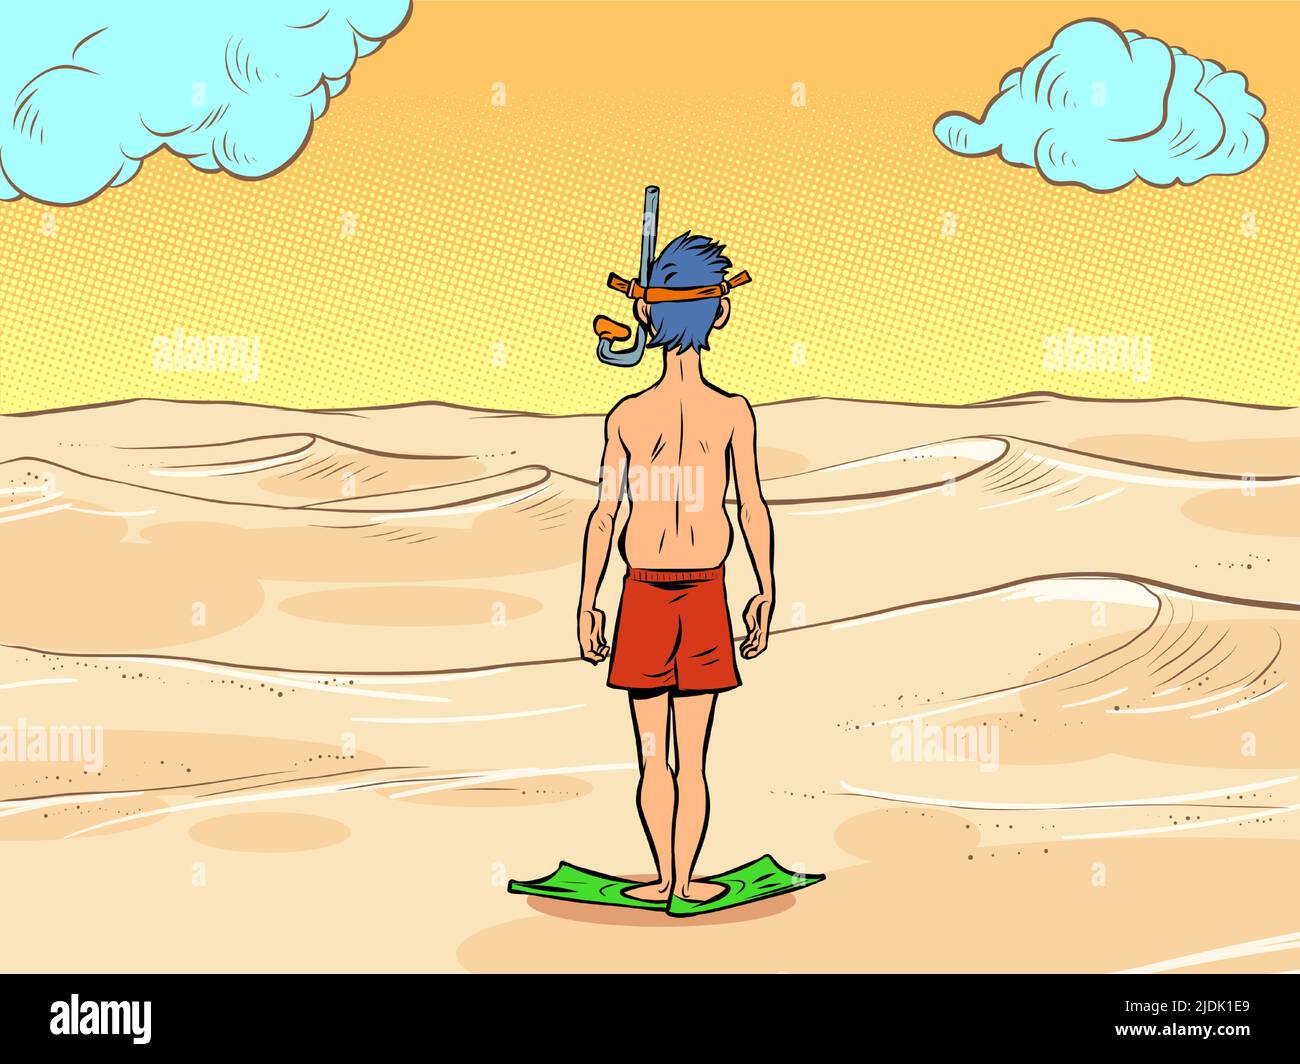 un uomo in una maschera subacquea si trova di fronte alle sabbie del deserto, non c'è acqua. Concetto di ecologia del riscaldamento globale Illustrazione Vettoriale